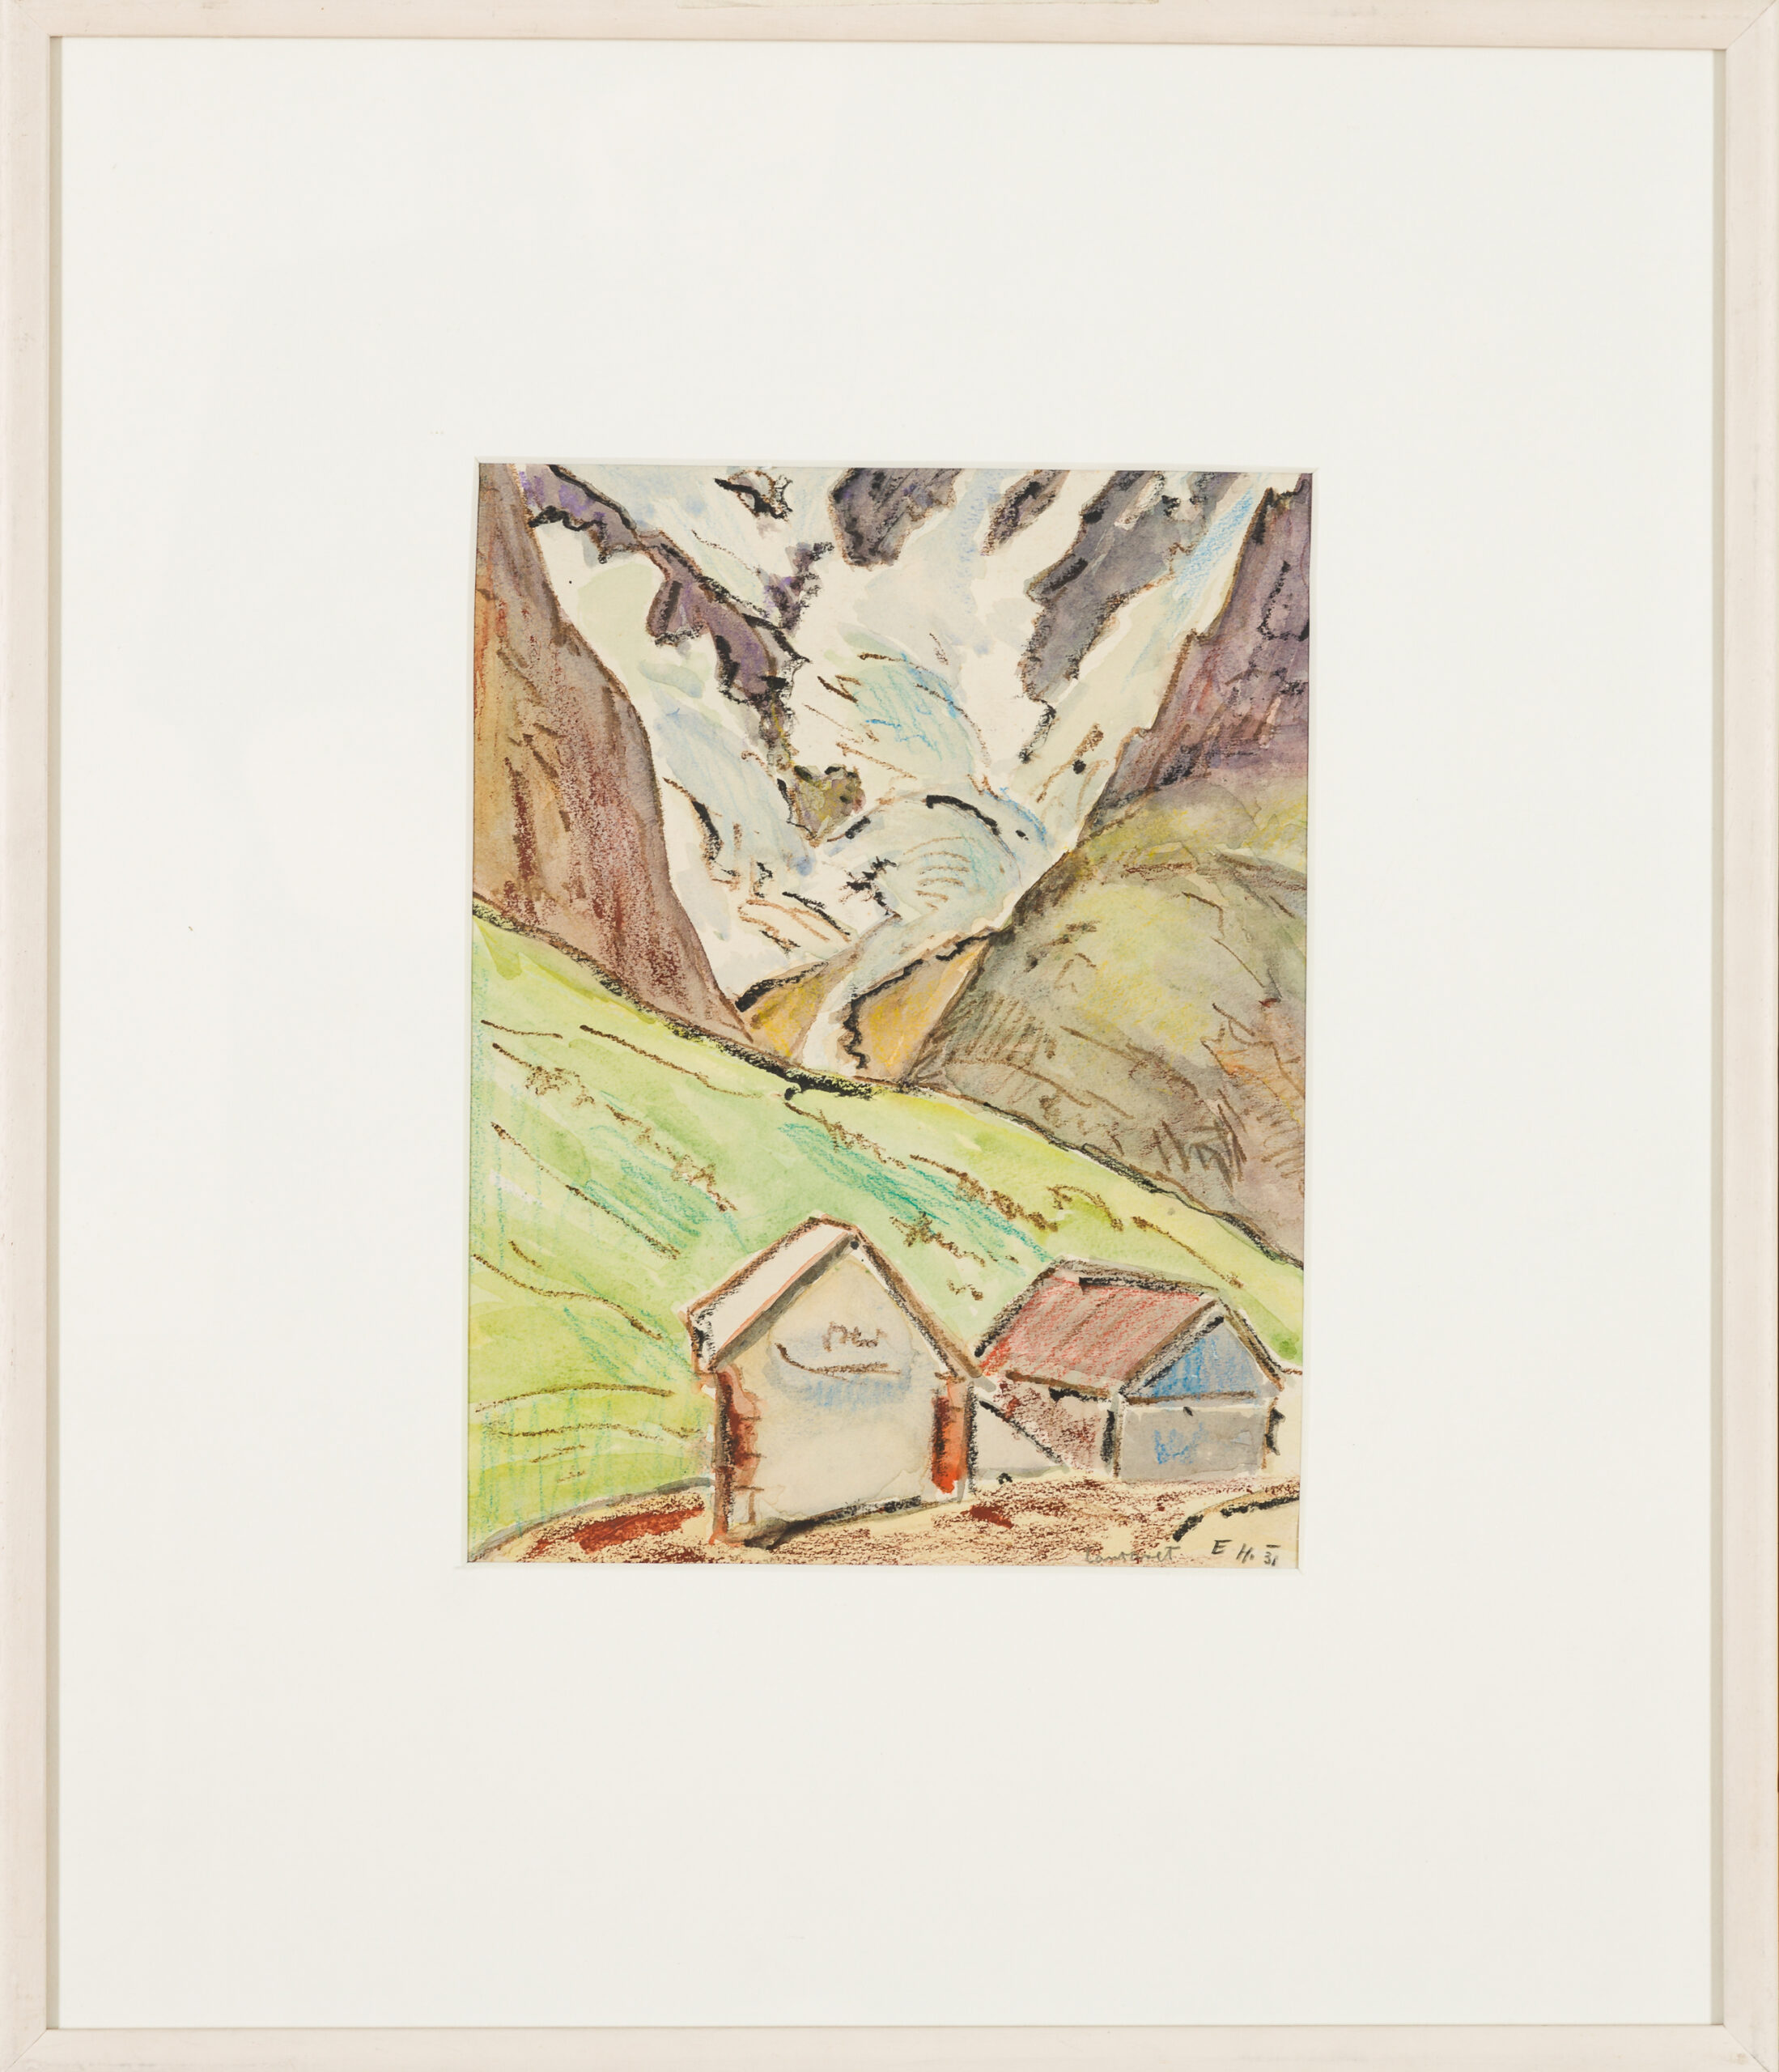 Egon Hofmann-Two huts in a mountain landscape